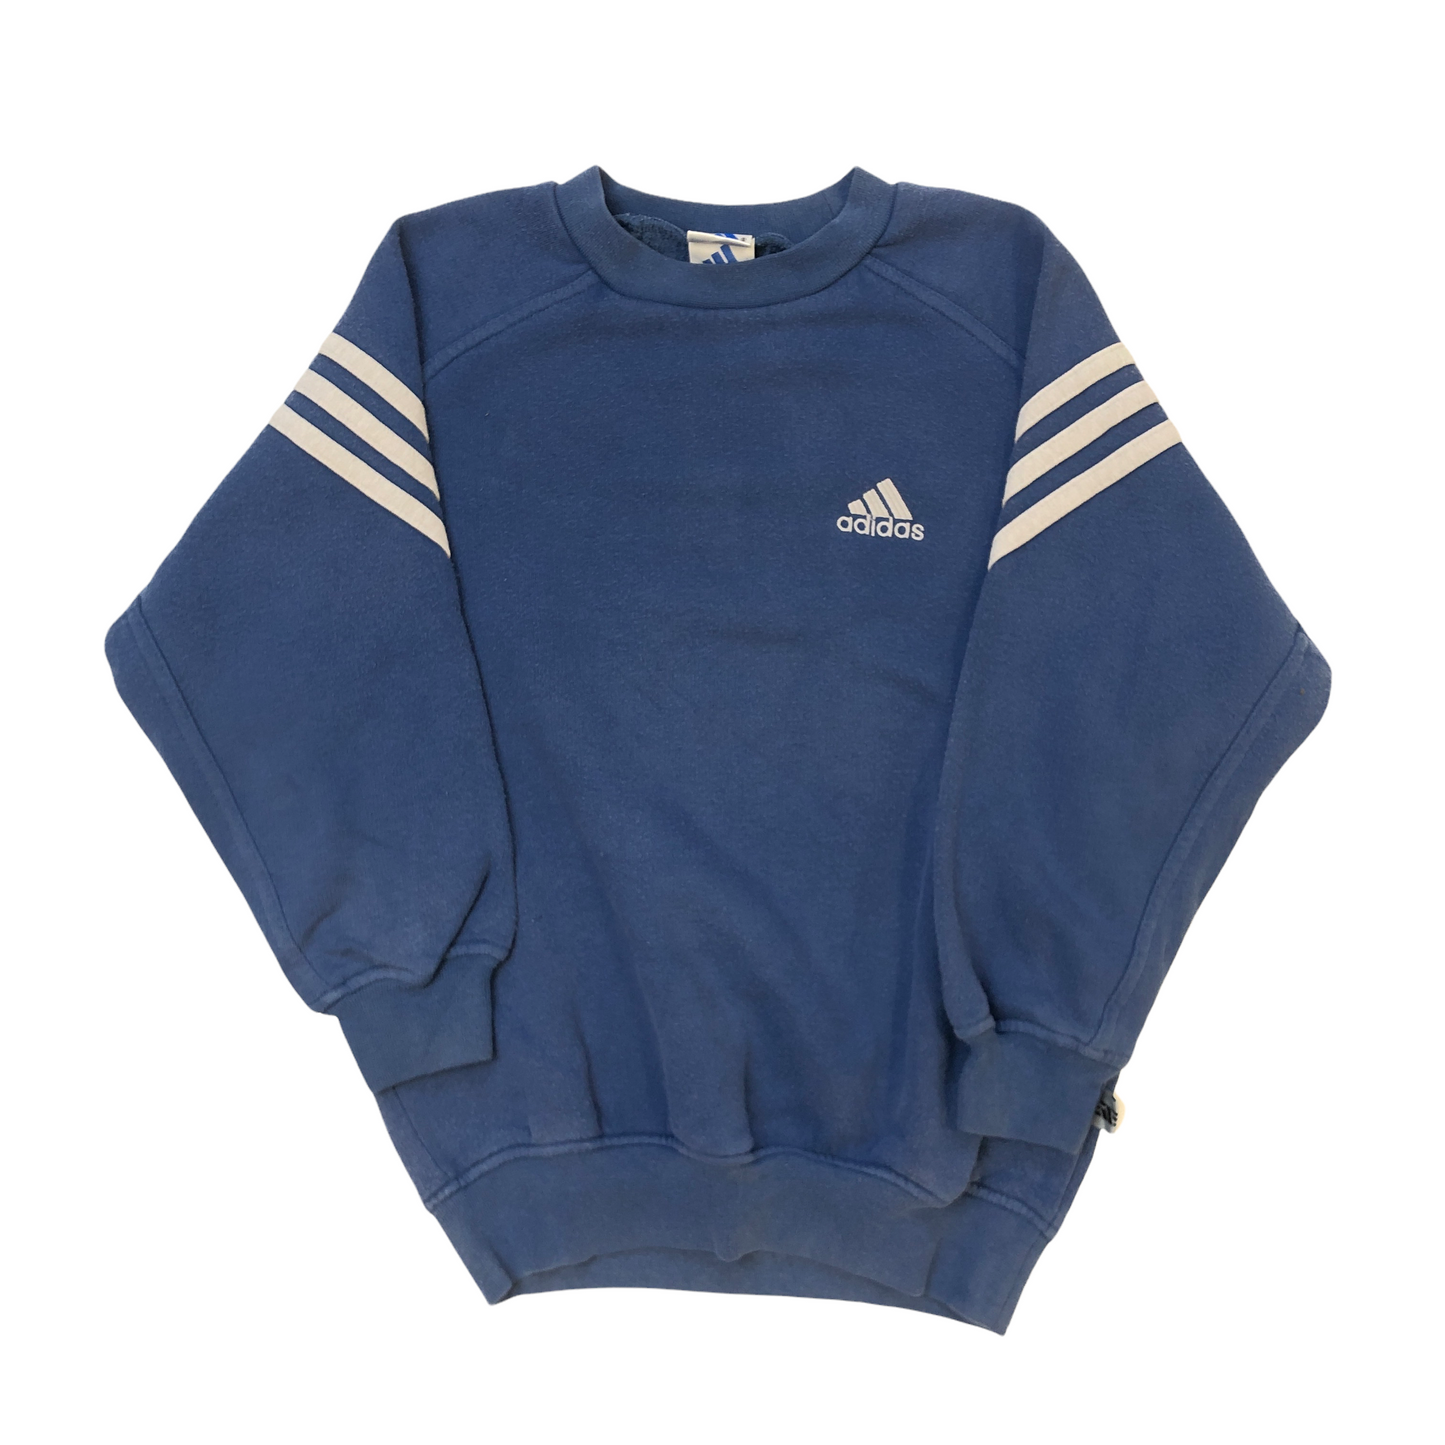 Vintage Adidas Sweatshirt (Age 8)